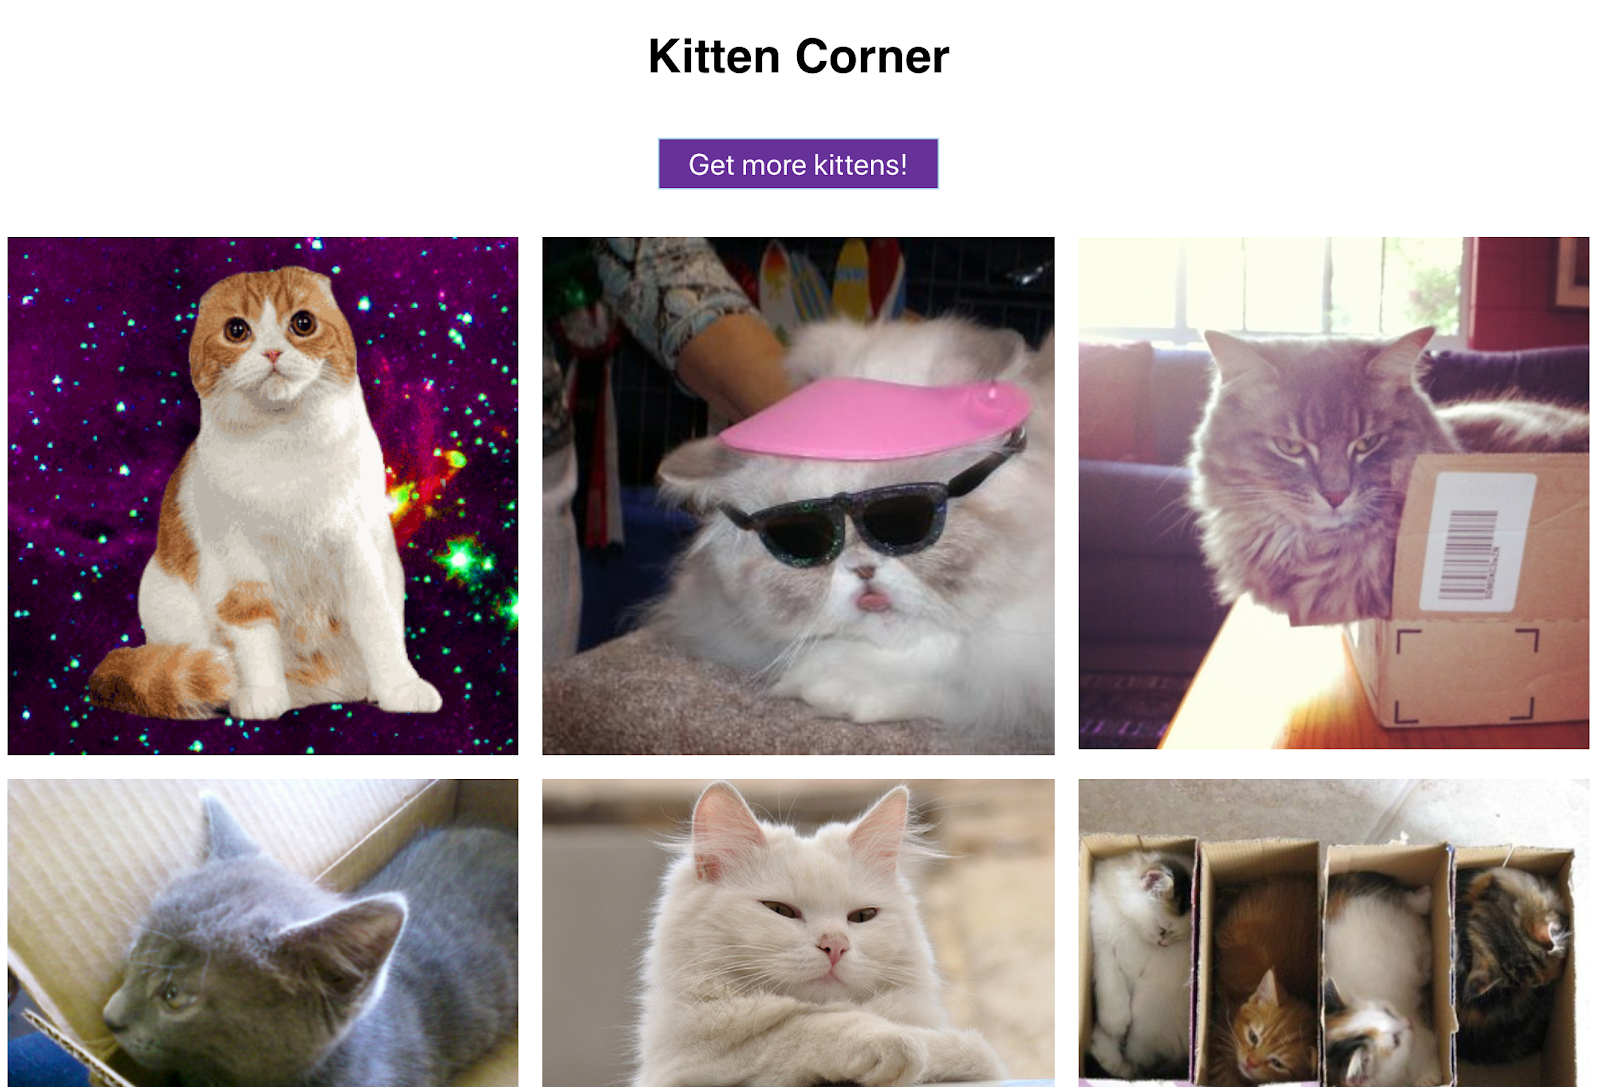 ग्रिड के तौर पर दिख रही बिल्लियों की प्यारी इमेज. साथ ही, अन्य इमेज देखने के लिए बटन भी मौजूद है - ये सारी चीज़ें एक वेब ऐप्लिकेशन में होनी चाहिए!